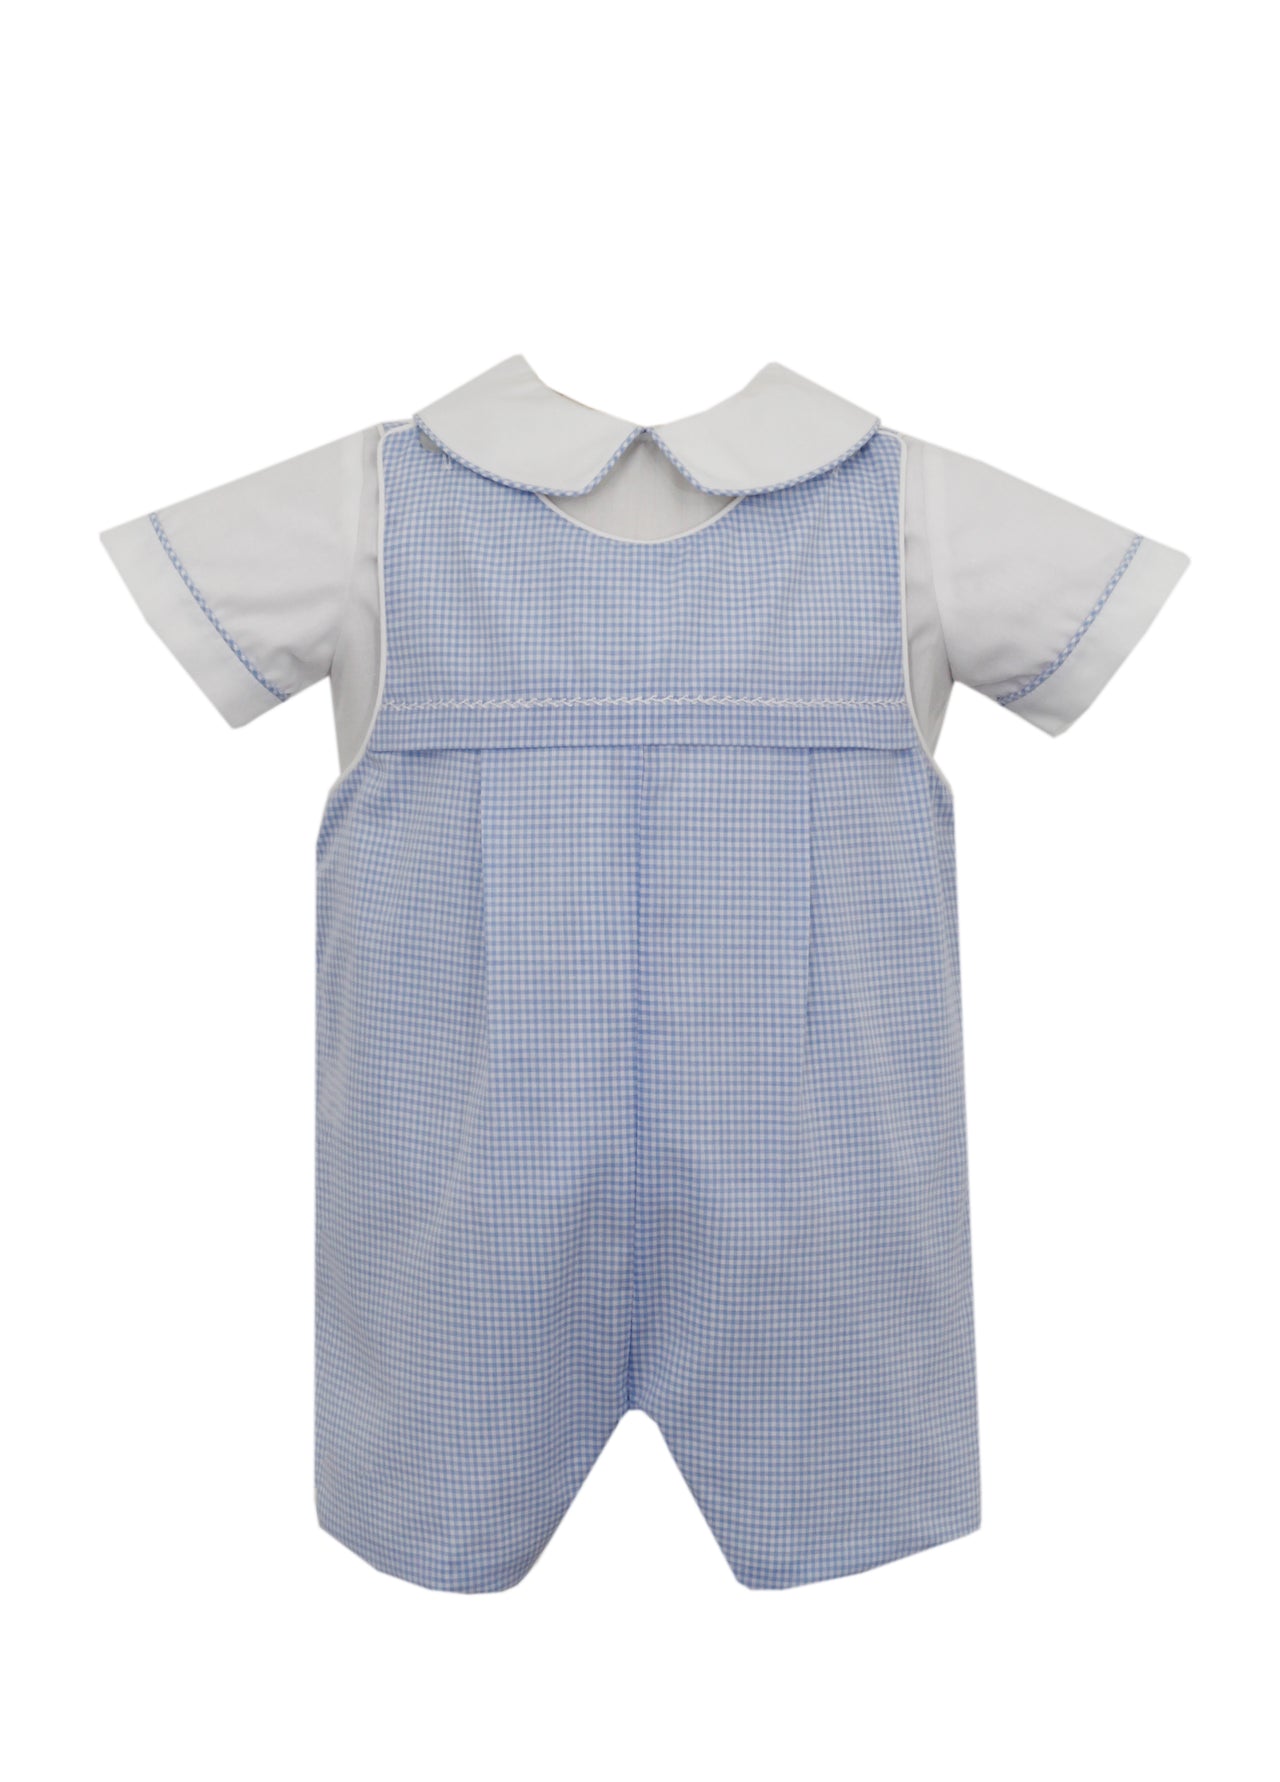 Petit Bebe Boy's Jon Jon W/White shirt Set Blue Gingham 113Z-MS24 5012